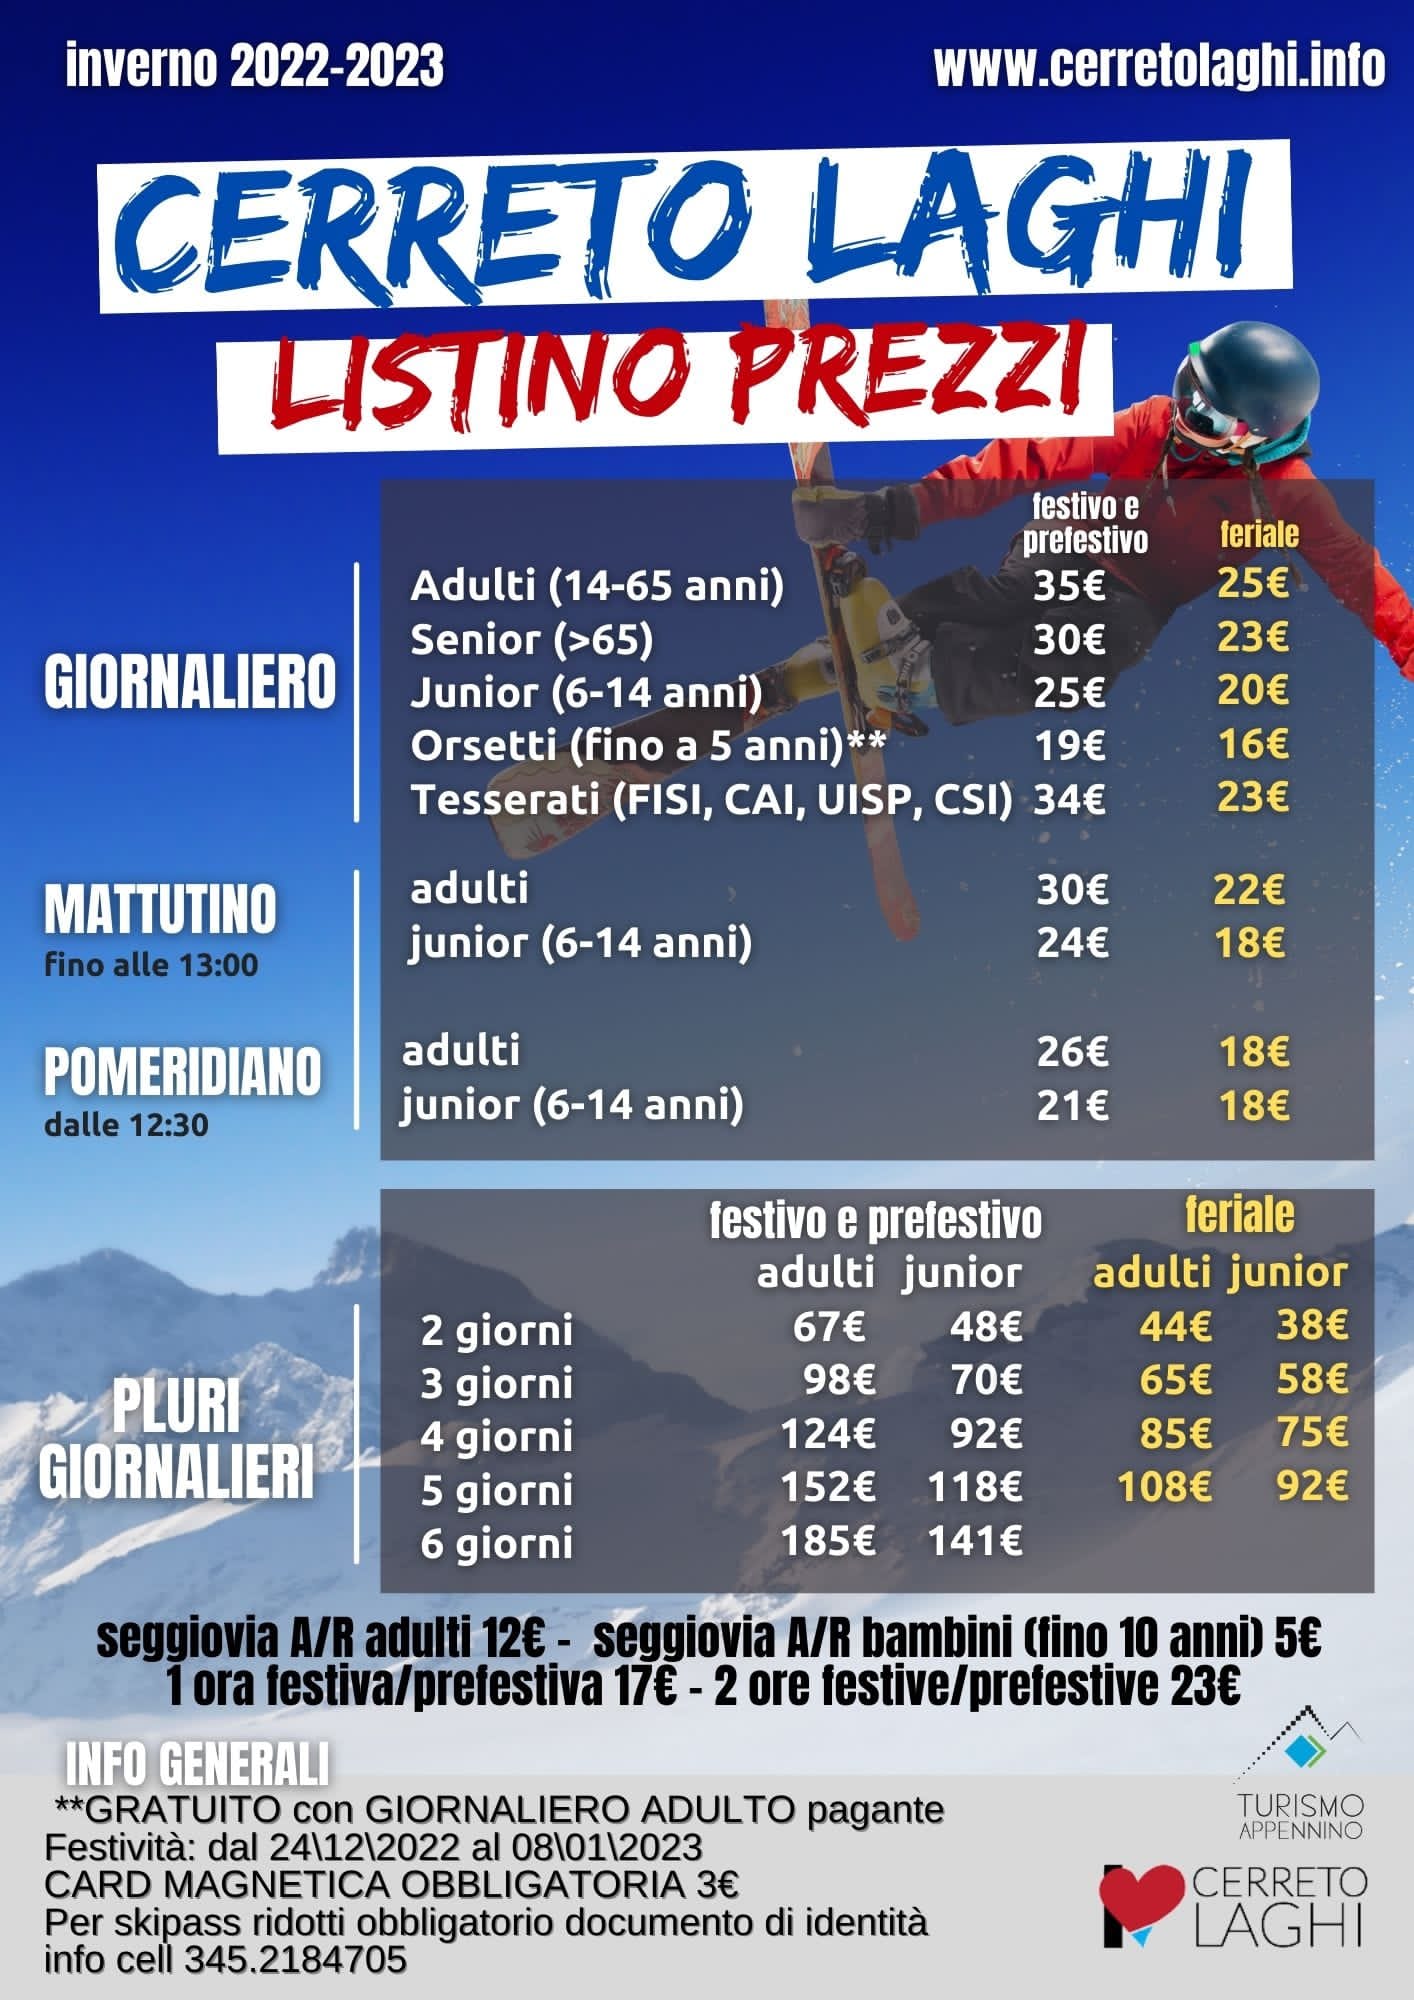 Listino Prezzi Skipass 2022 / 2023